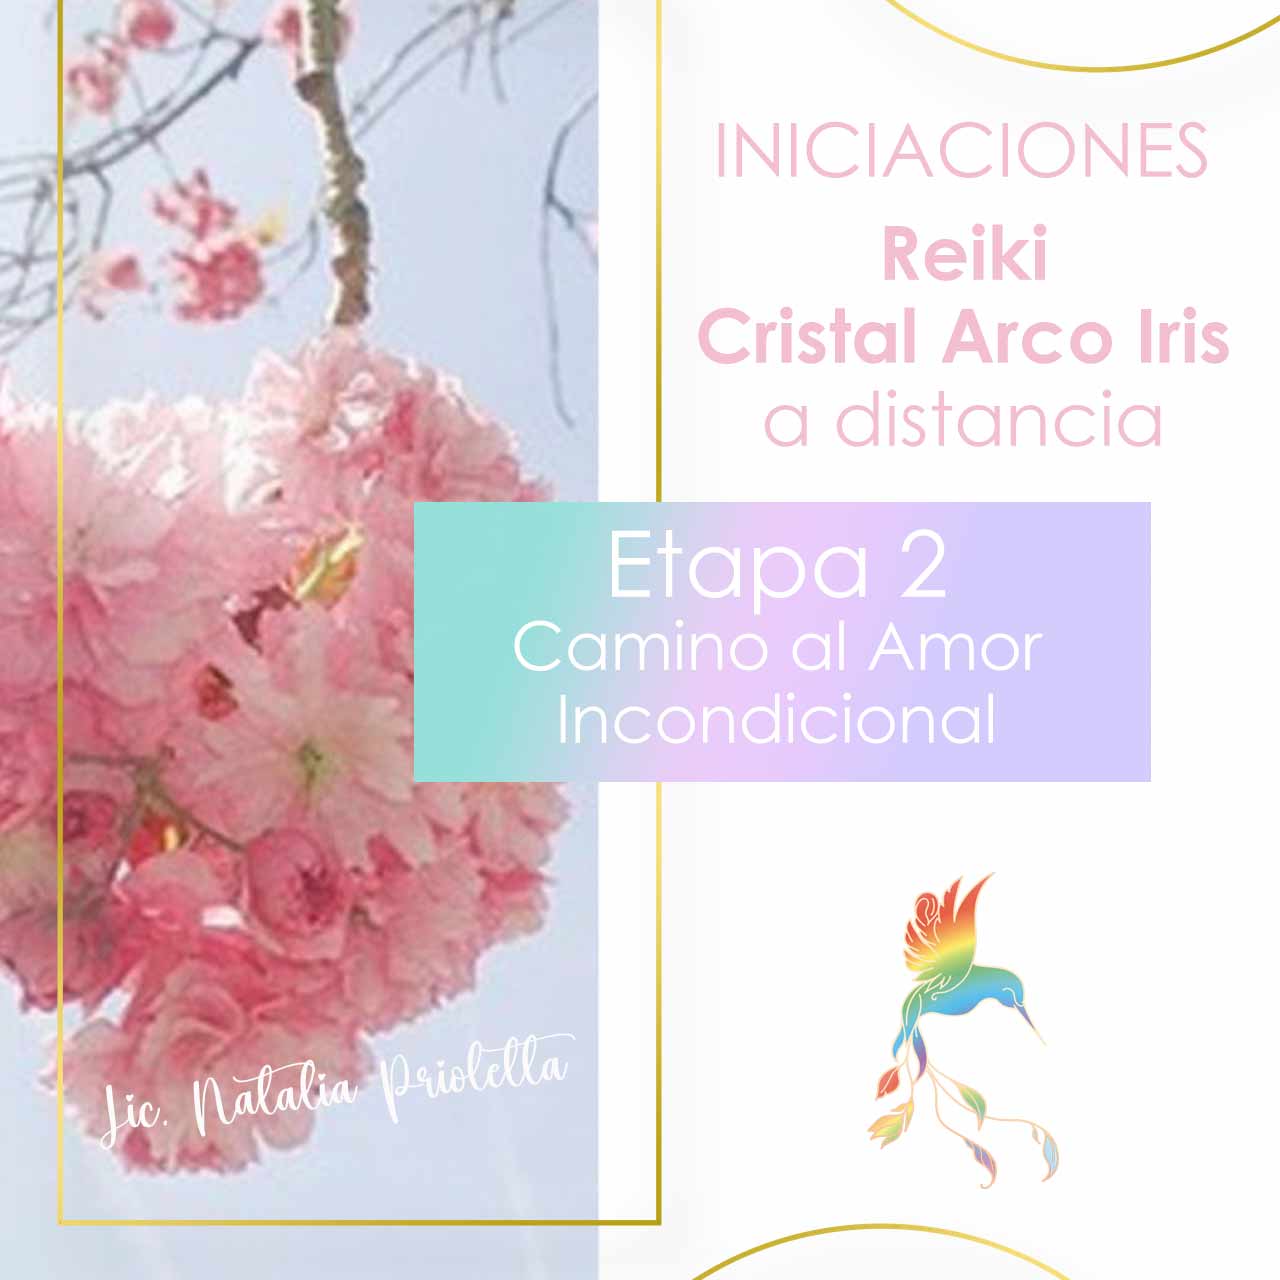 Iniciaciones de Reiki Cristal Arco Iris Etapa 2 Camino al Amor Incondicional